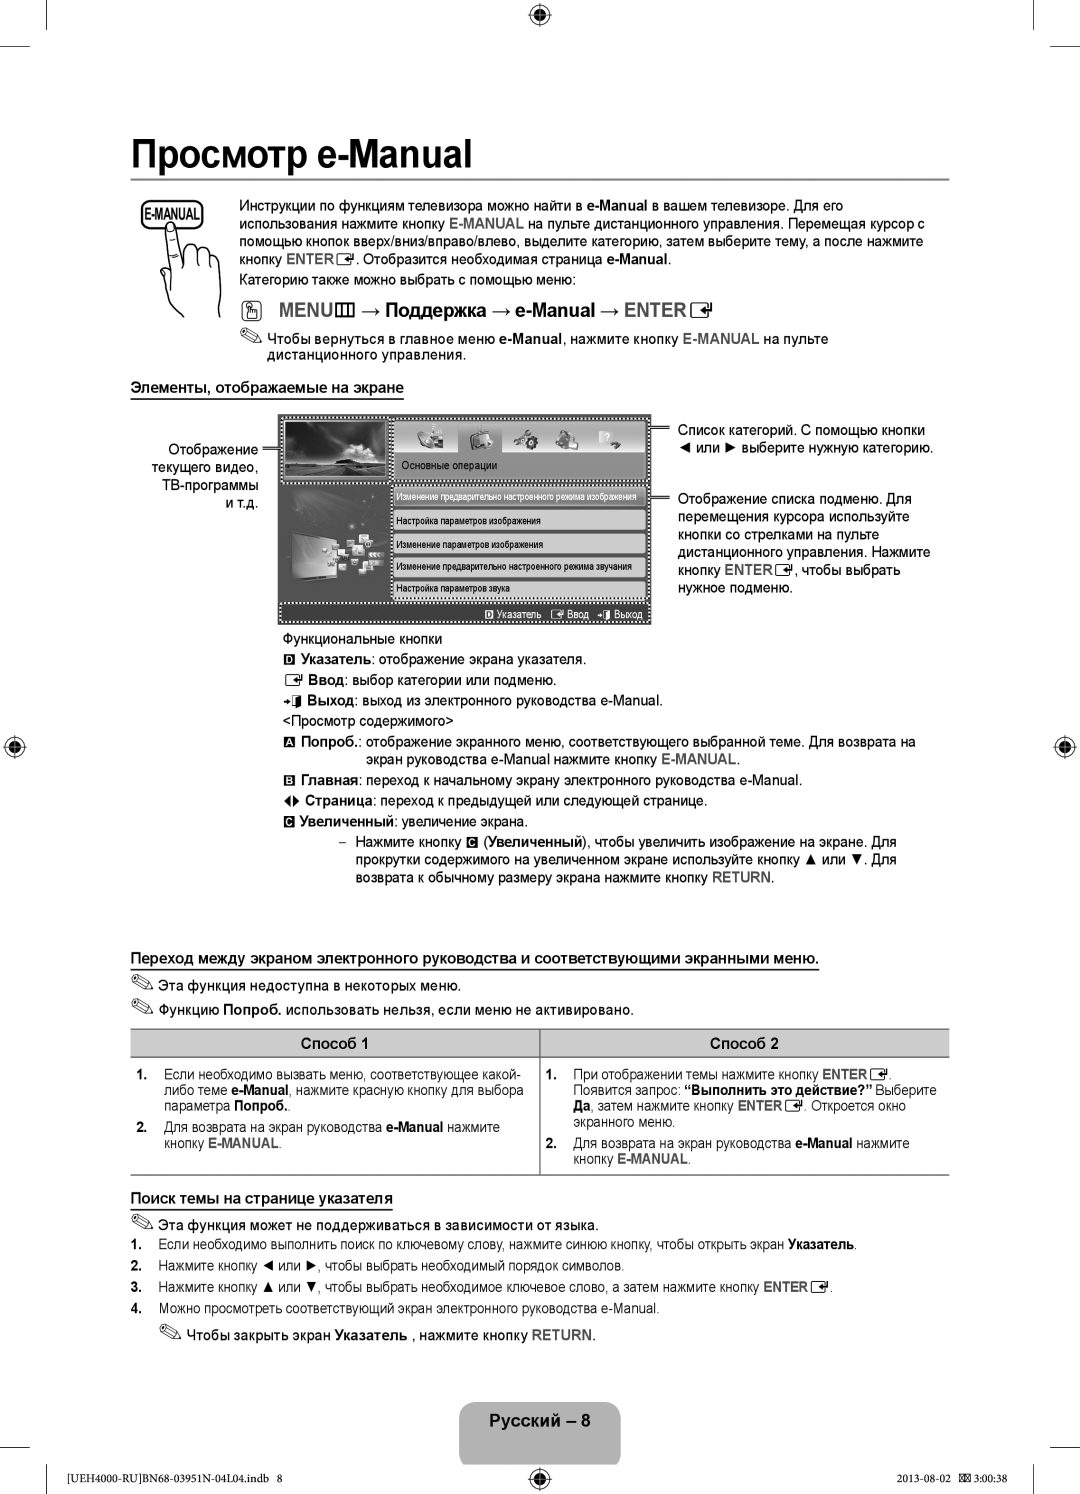 Samsung UE32EH4000WXMS, UE26EH4000WXMS manual Элементы, отображаемые на экране, Способ, Поиск темы на странице указателя 